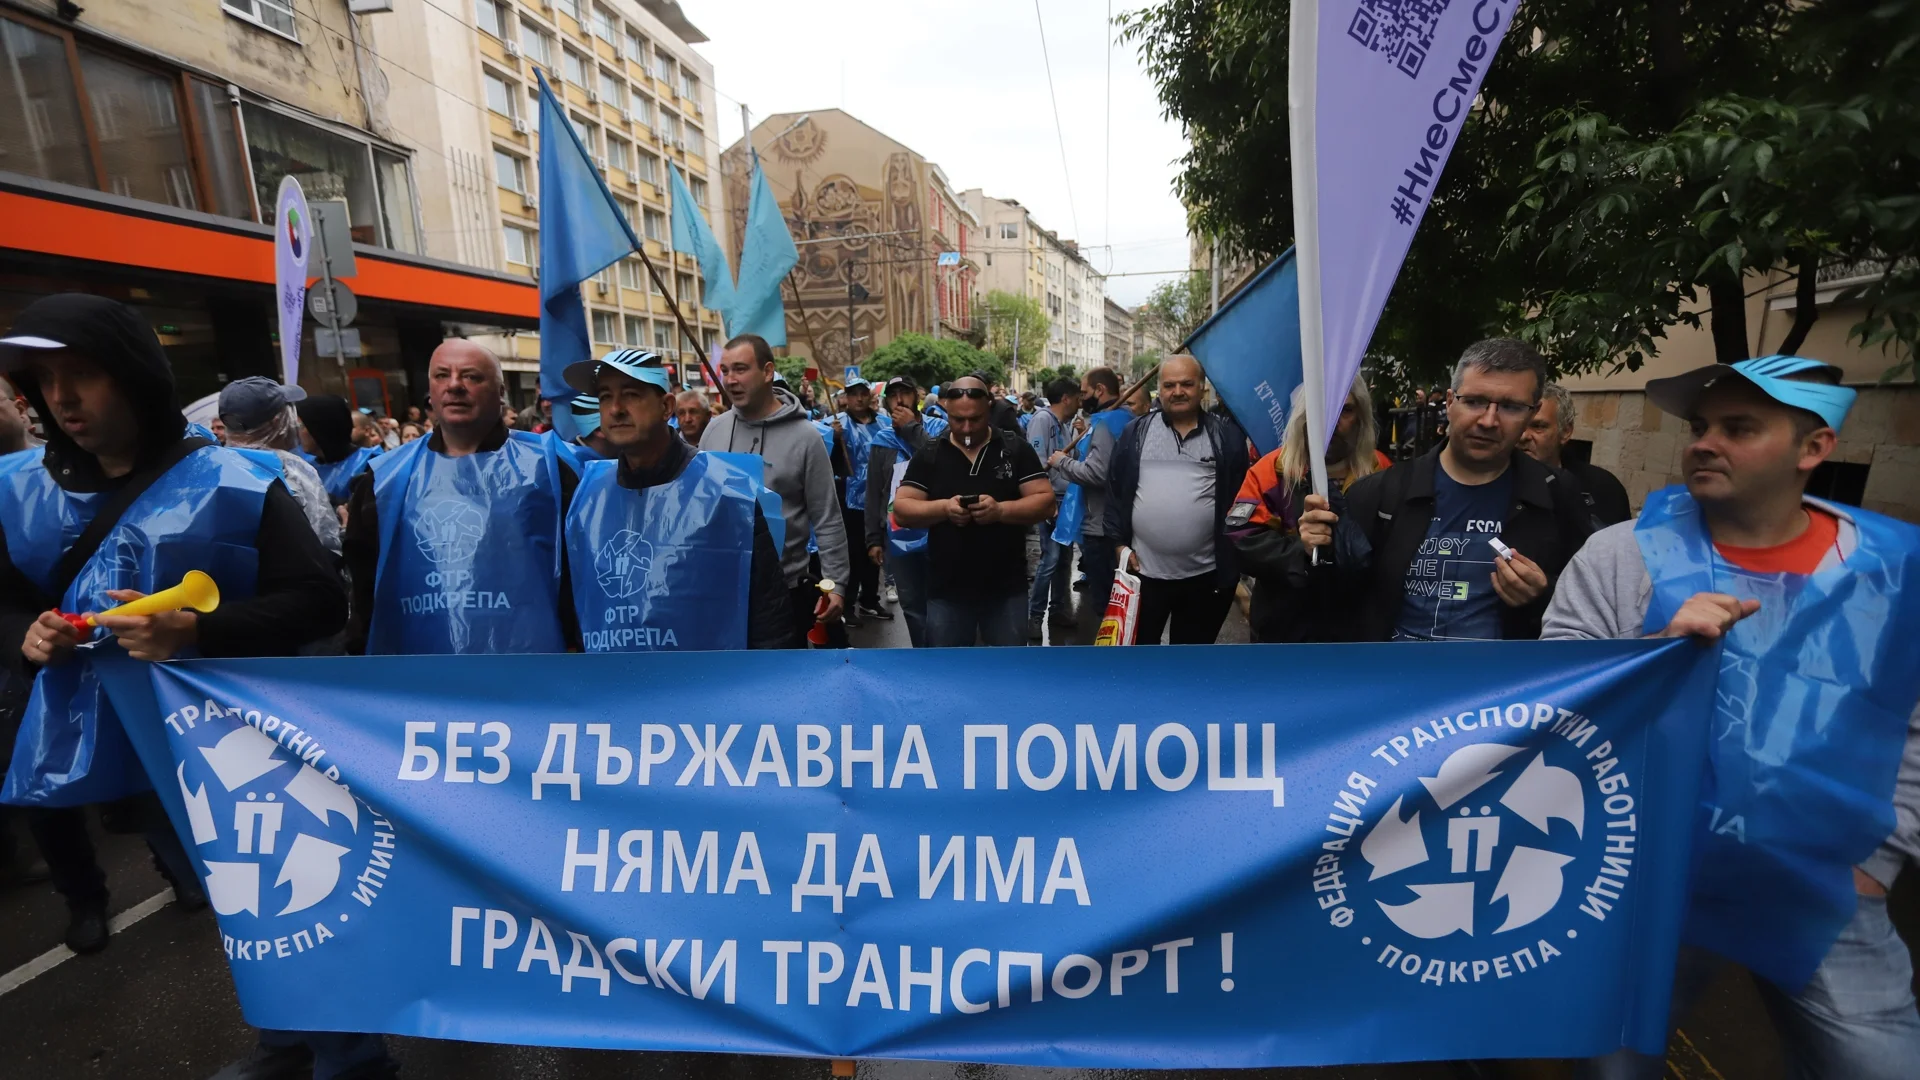 Автобусите за кв. "Дружба" могат да спрат в пиков час: Градският транспорт в София на протест